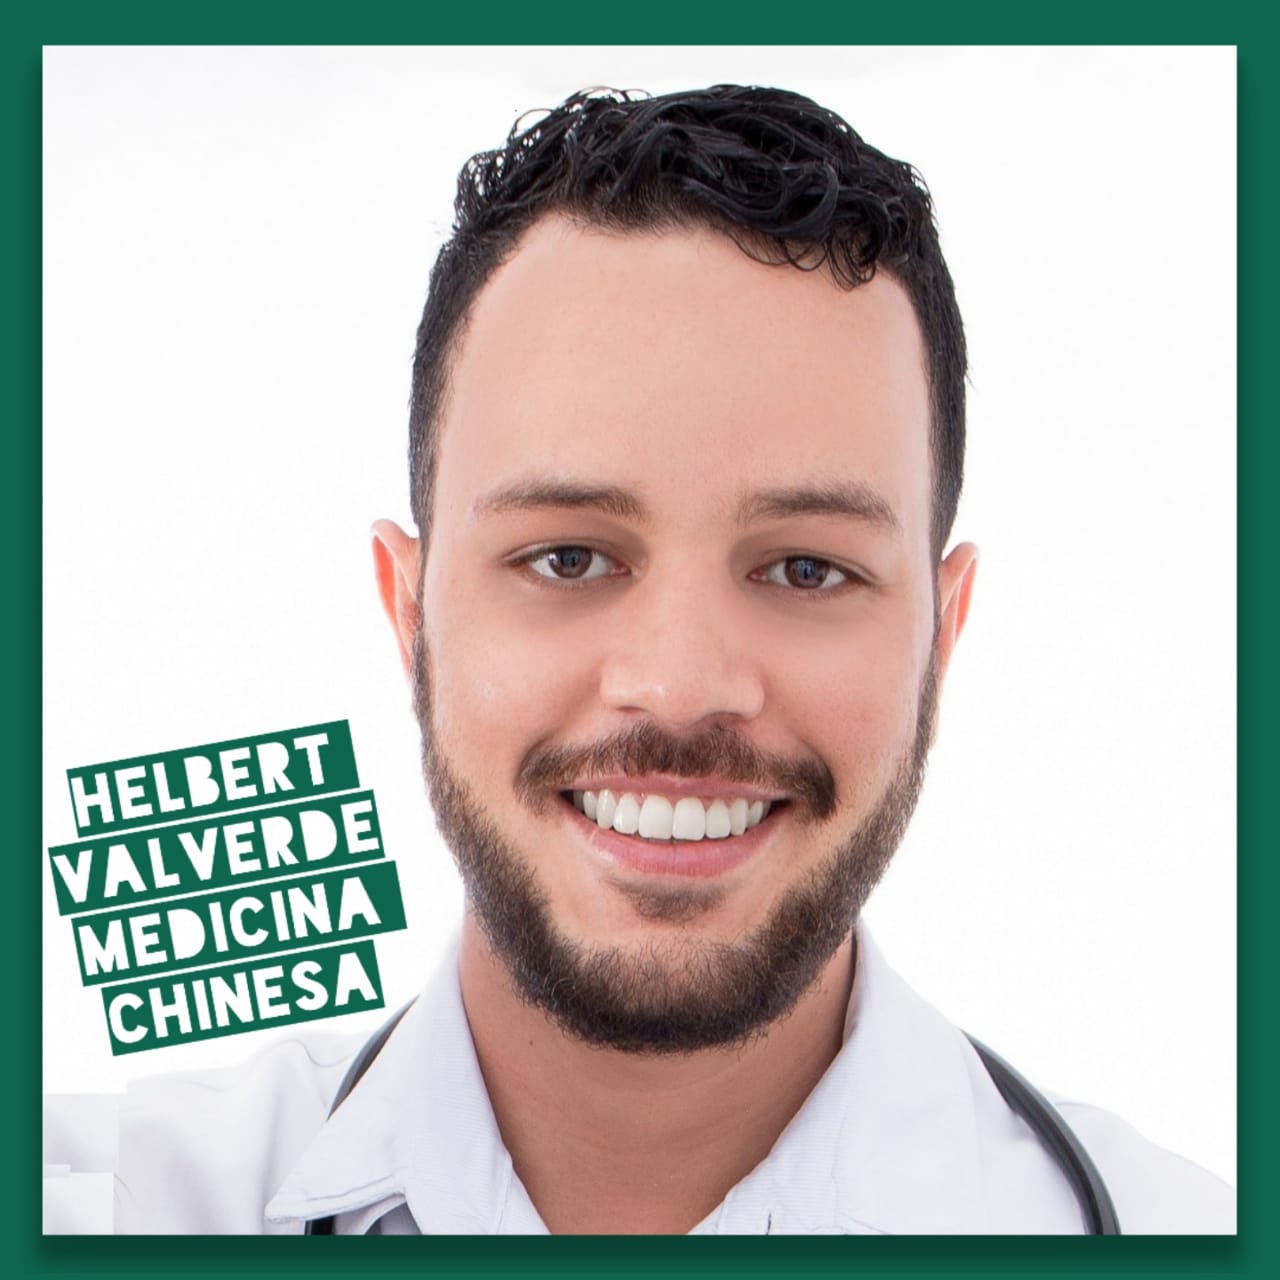 Helbert Valverde fala sobre a medicina tradicional chinesa